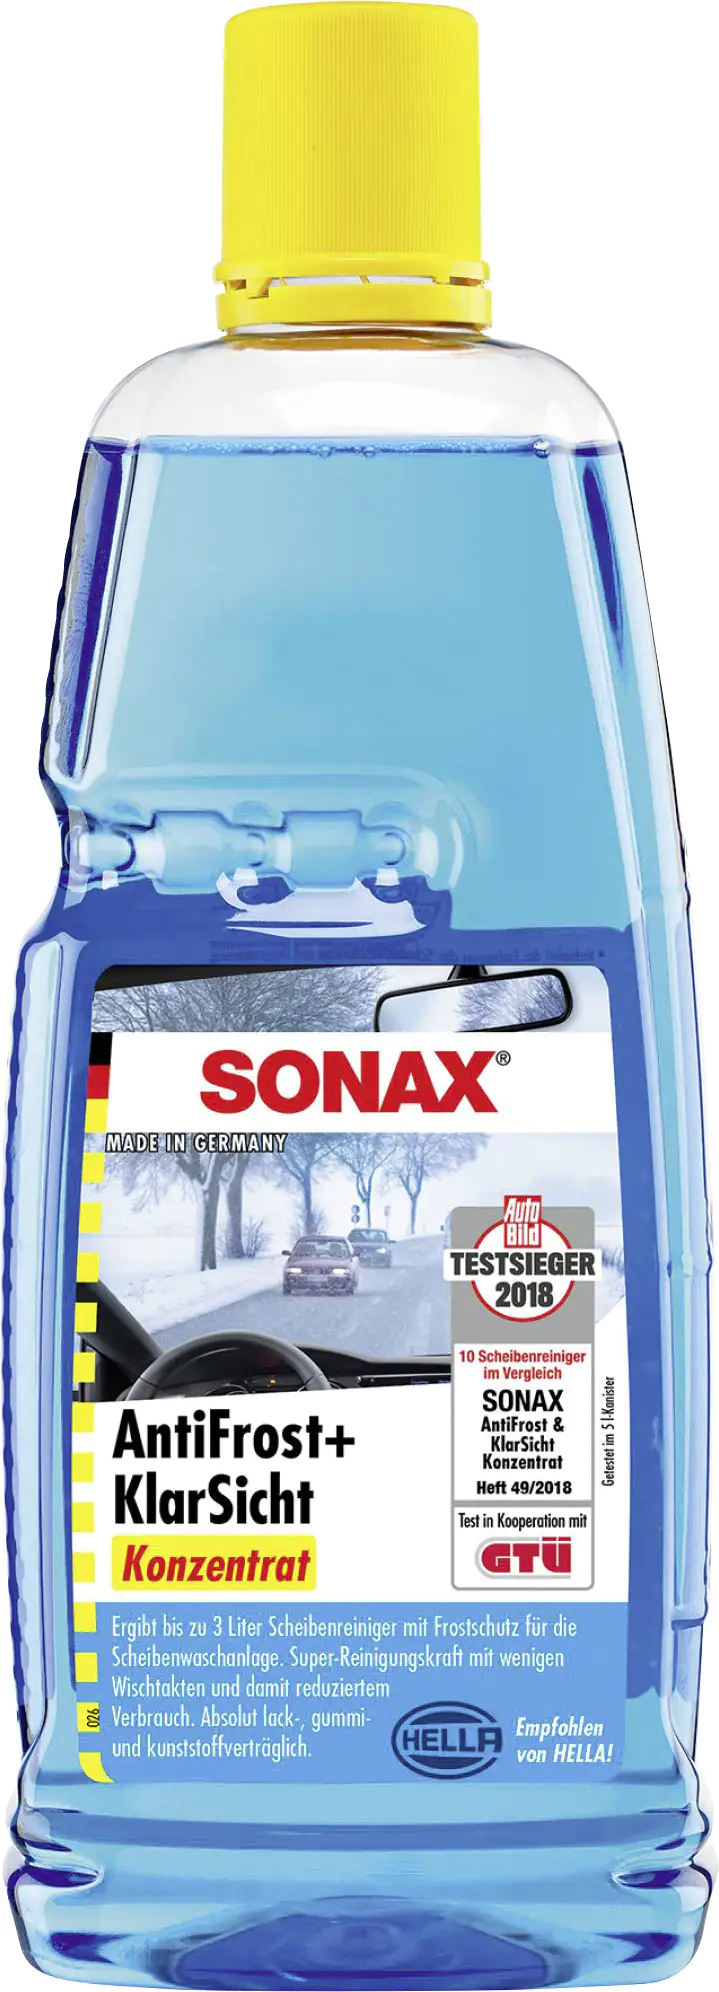 Sonax Scheibenreiniger Antifrost + Klarsicht bis -30°C Konzentrat 2:1 1L  kaufen